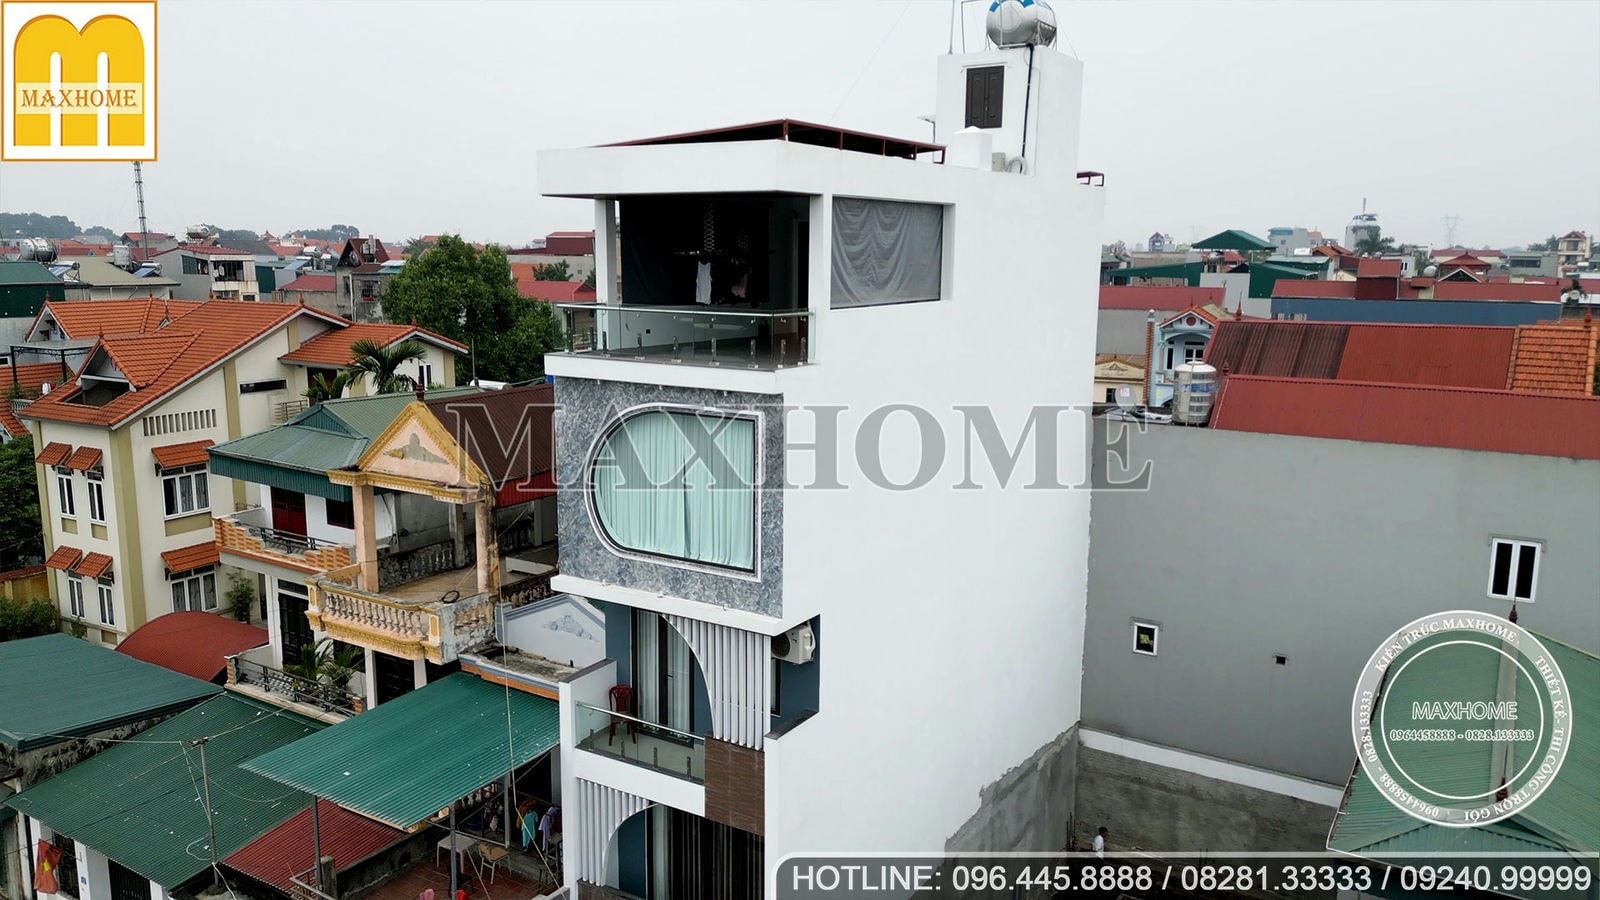 Maxhome bàn giao nhà phố 4 tầng 1 tum view hồ cực đỉnh tại Hà Nội